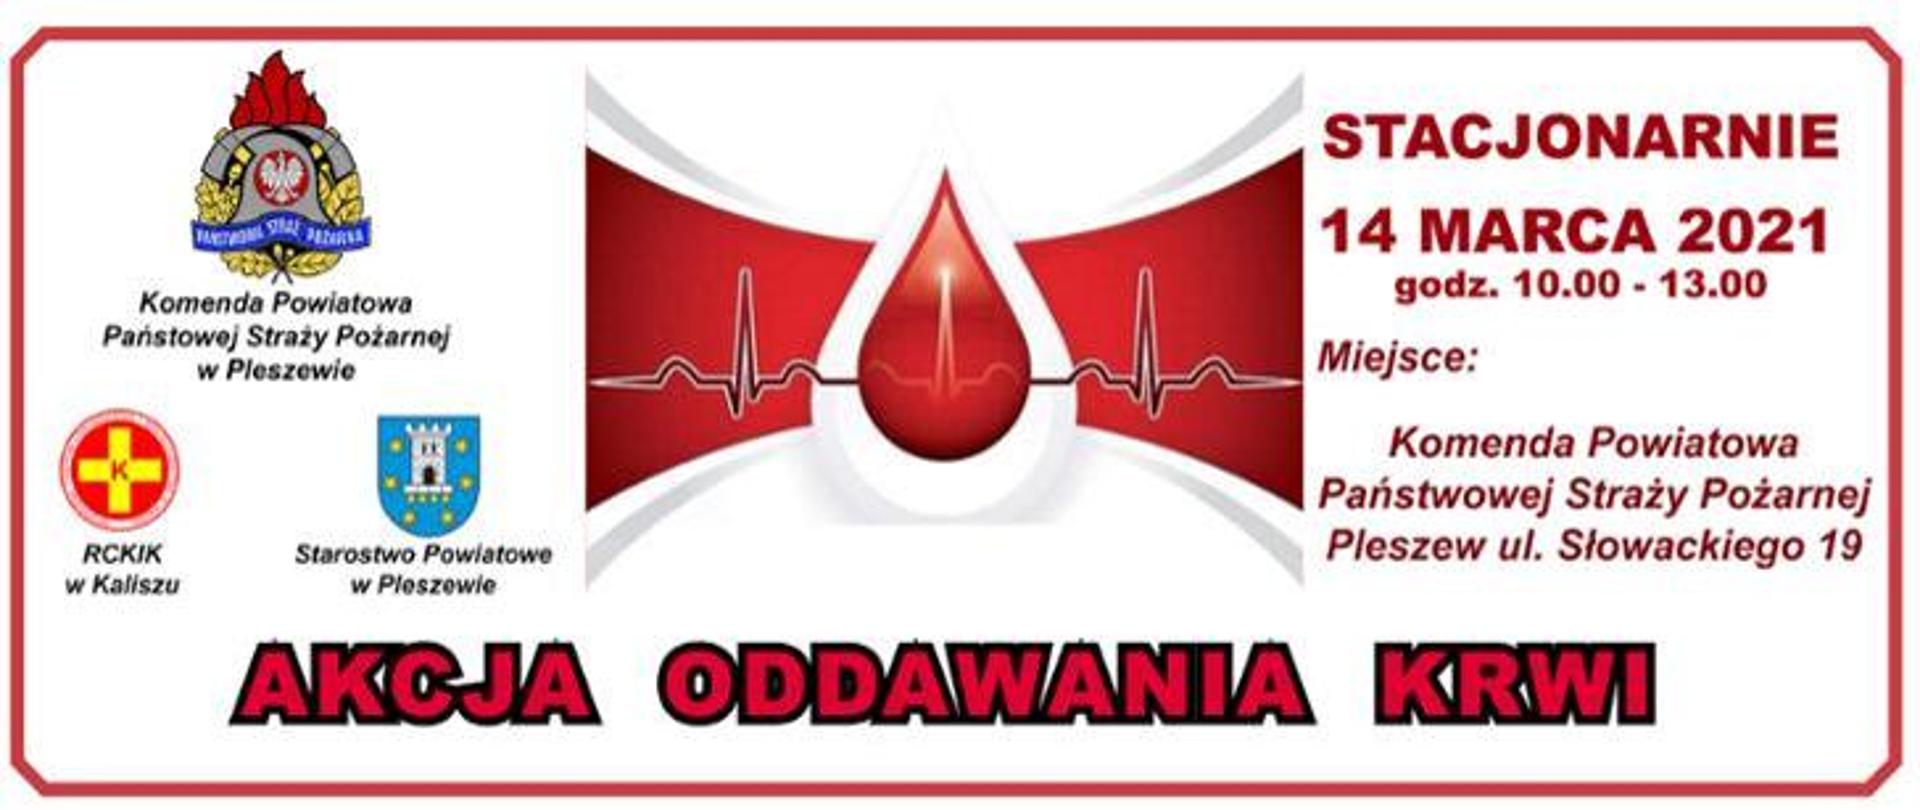 KP PSP w Pleszewie organizuje akcję oddawania krwi w siedzibie Komendy Powiatowej PSP ul. Słowackiego 19. Baner informacyjny zawiera kroplę krwi oraz logo PSP, Starostwa Powiatowego oraz RCKiK w Kaliszu.